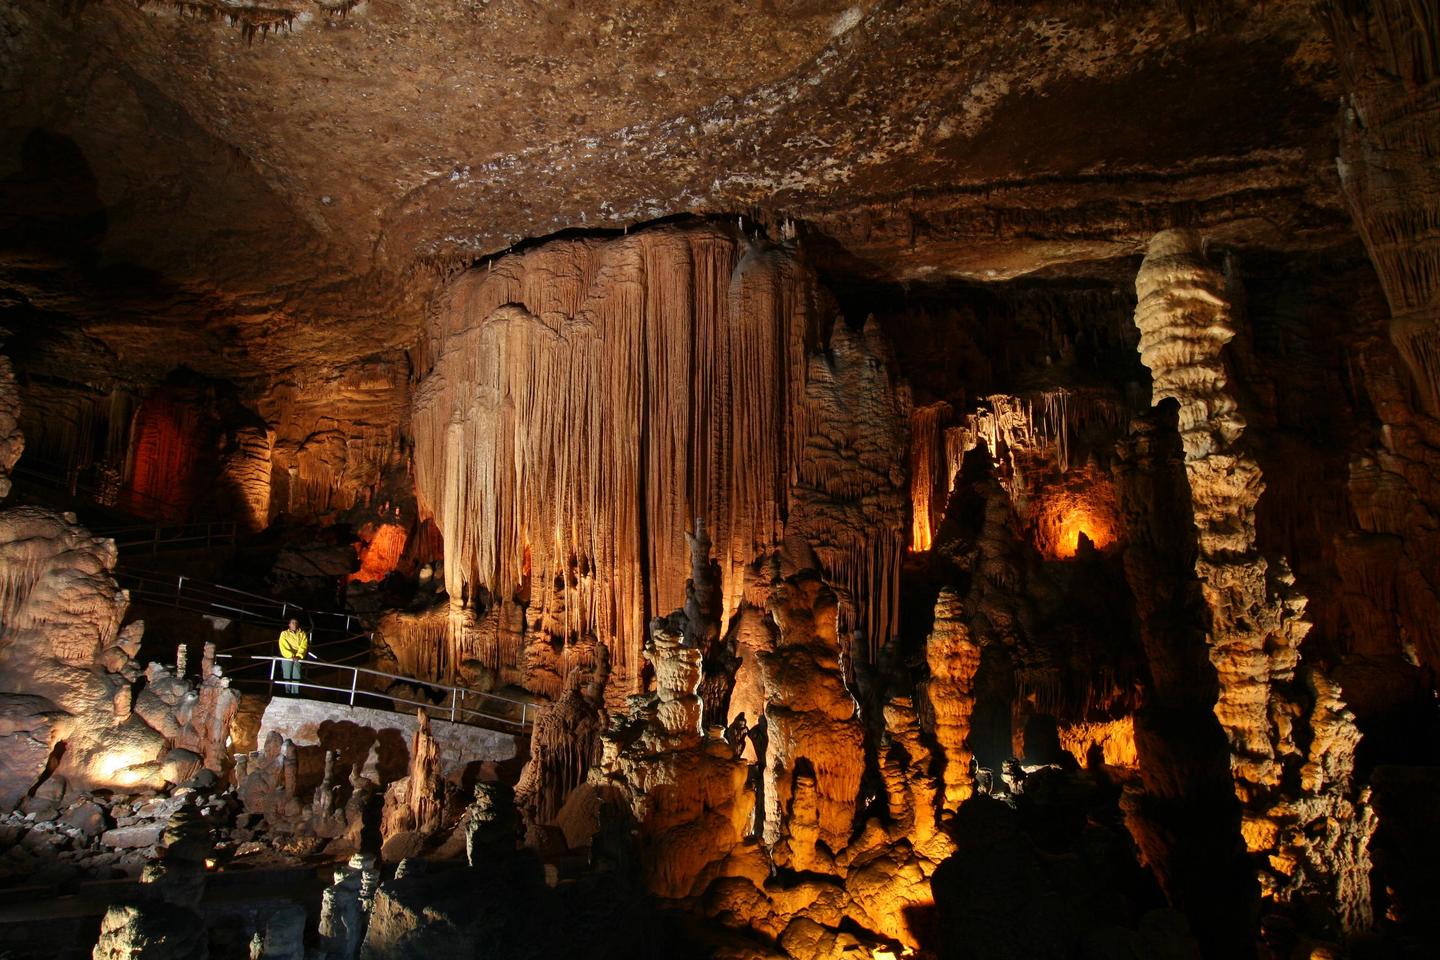 BLANCHARD SPRINGS CAVERNS 6Blanchard Springs Caverns